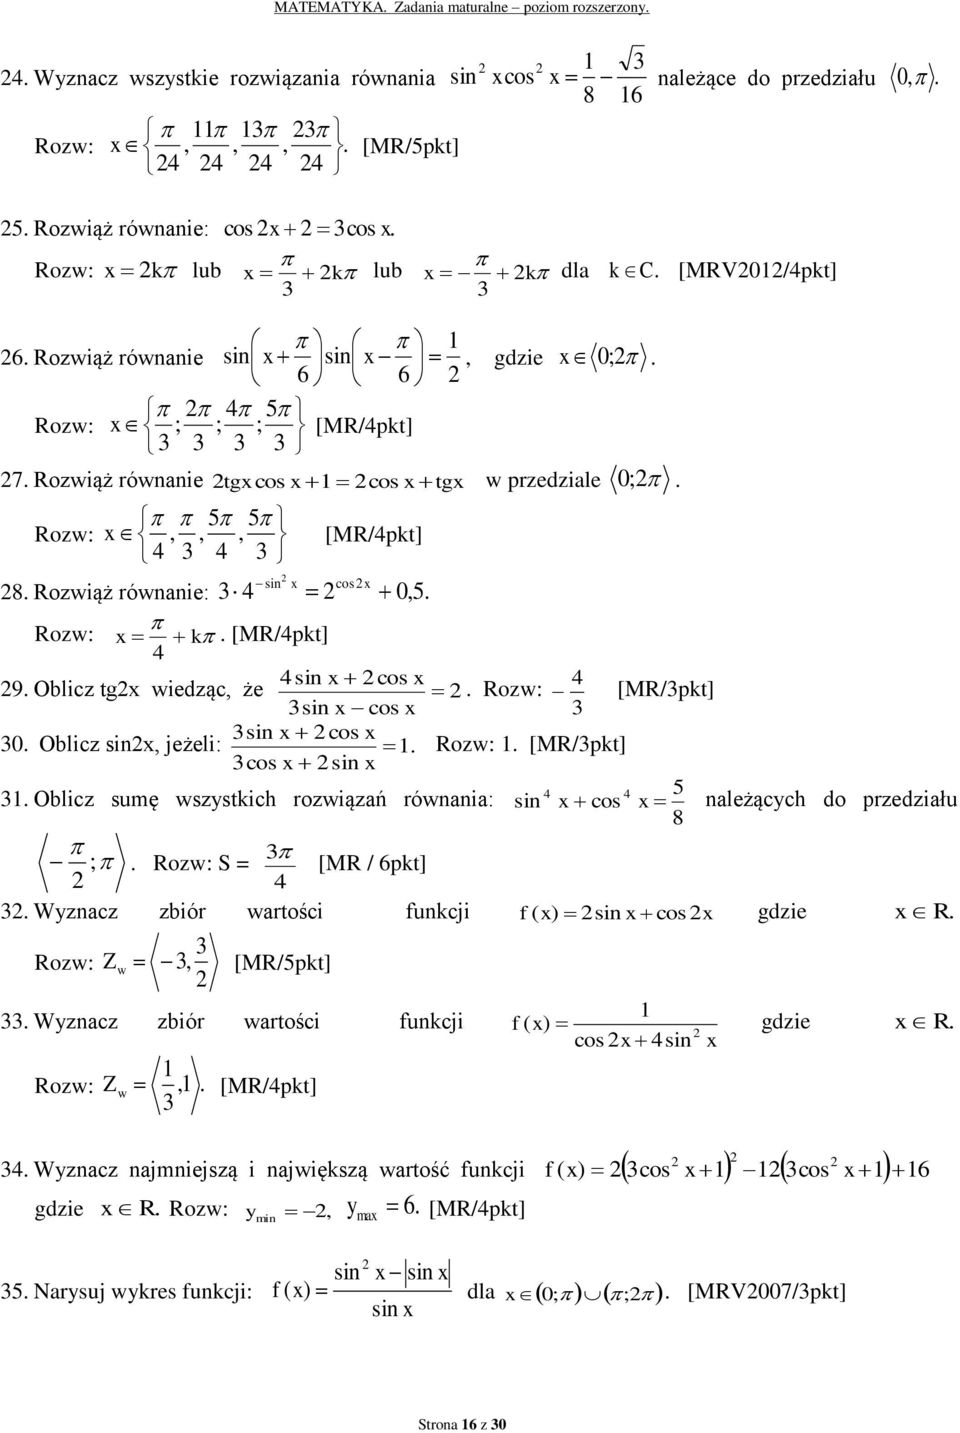 x [MR/pkt] sin x cos x 0 Oblicz sinx, jeżeli: cos x sin x Rozw: [MR/pkt] 5 Oblicz sumę wszystkich rozwiązań równania: sin x cos x należących do przedziału 8 ; Rozw: S = [MR / 6pkt] Wyznacz zbiór